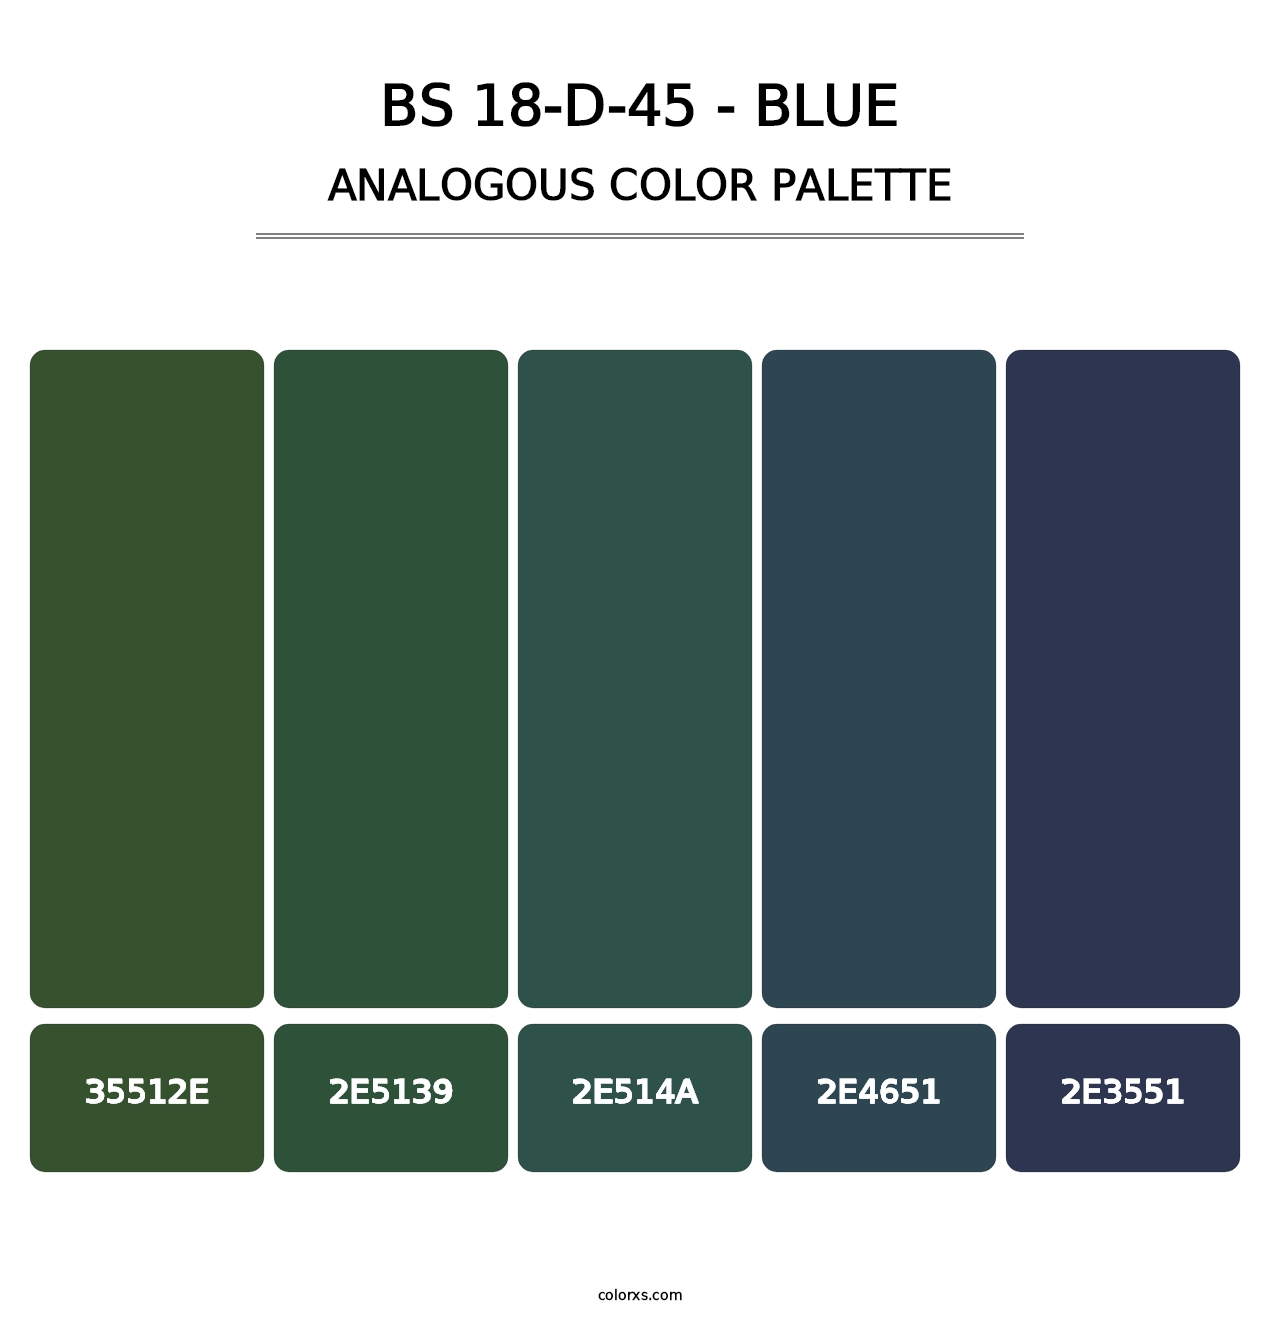 BS 18-D-45 - Blue - Analogous Color Palette